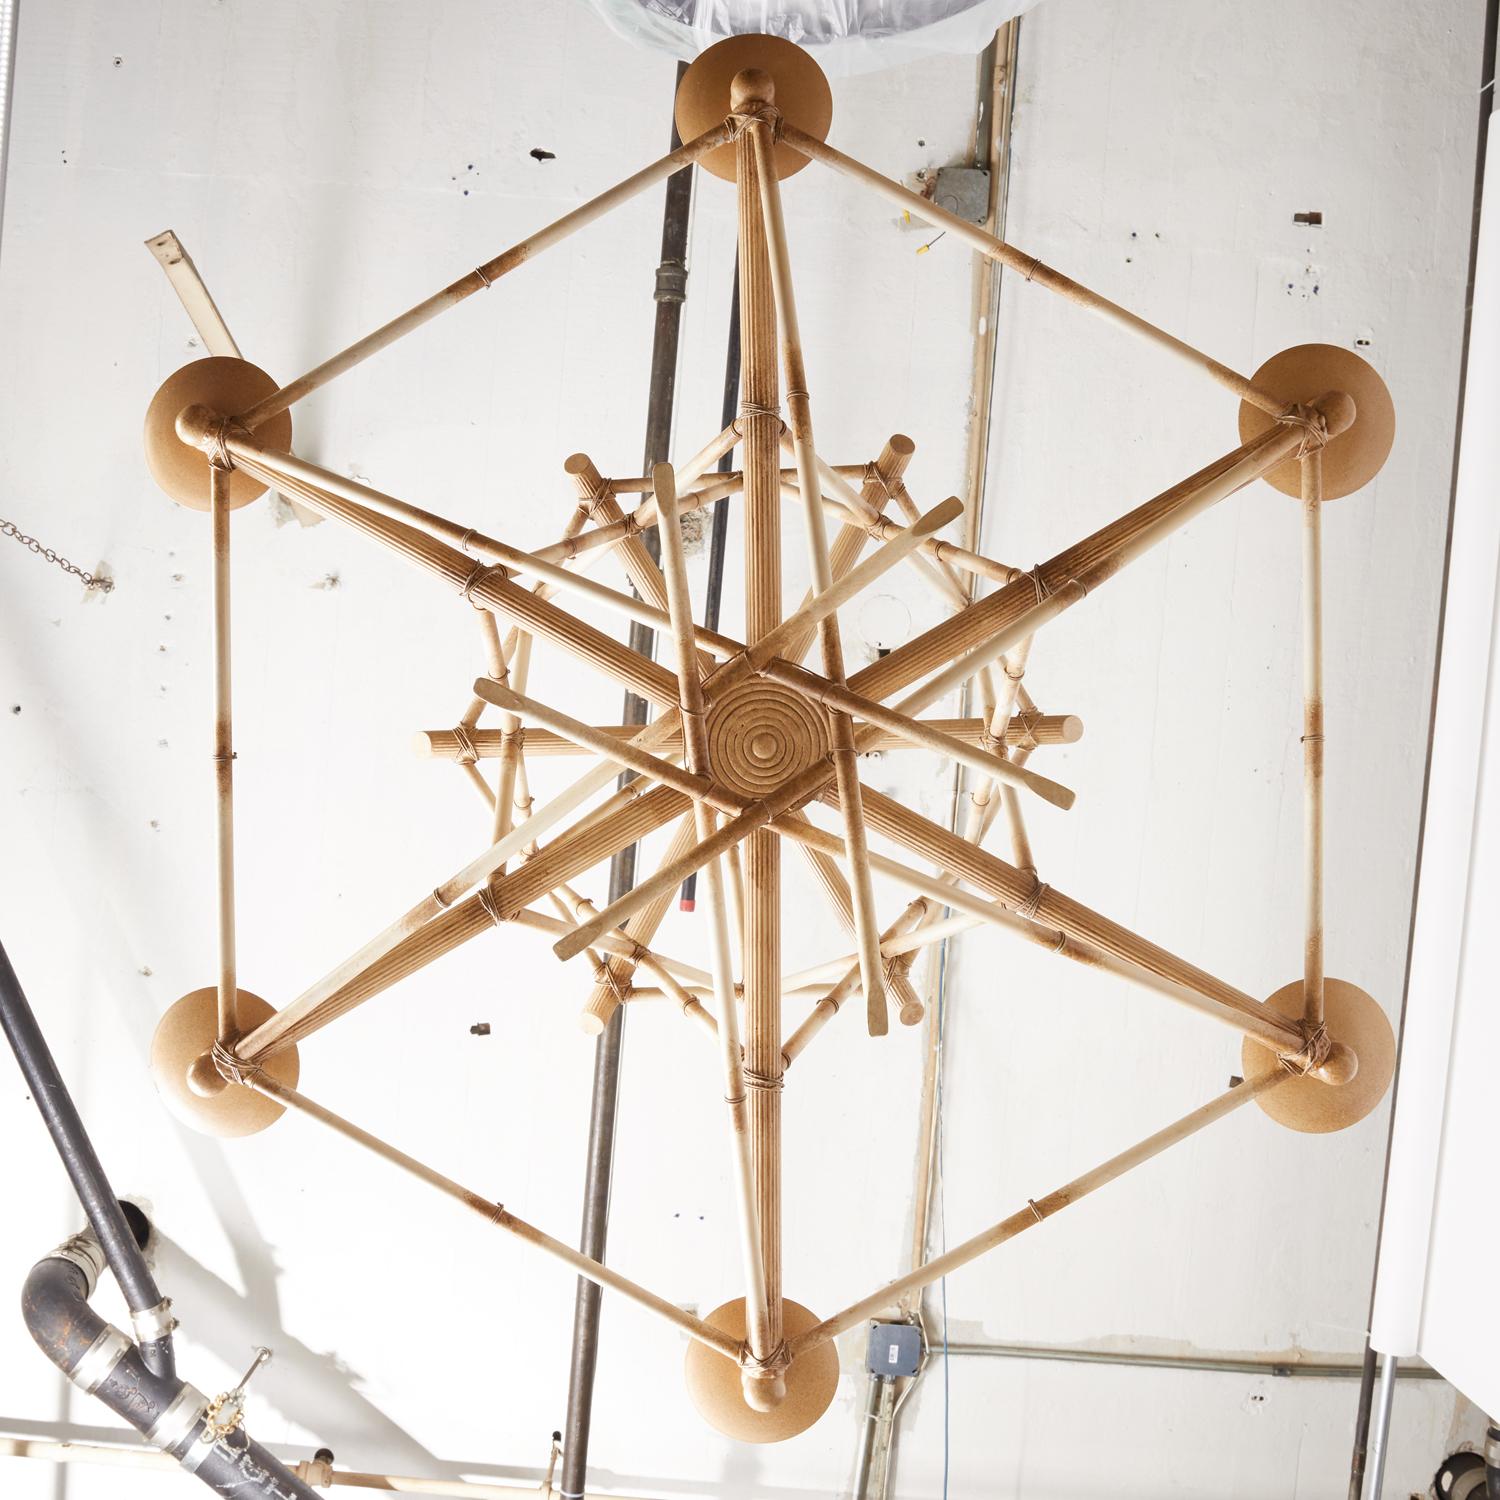 Ein sechsflammiger Kronleuchter aus falschem Bambus von David Duncan Lighting. Dieser Kronleuchter zeichnet sich durch eine spielerisch komplizierte geometrische Struktur aus, die aus gekreuzten Abschnitten aus handbemaltem Messing besteht. Diese